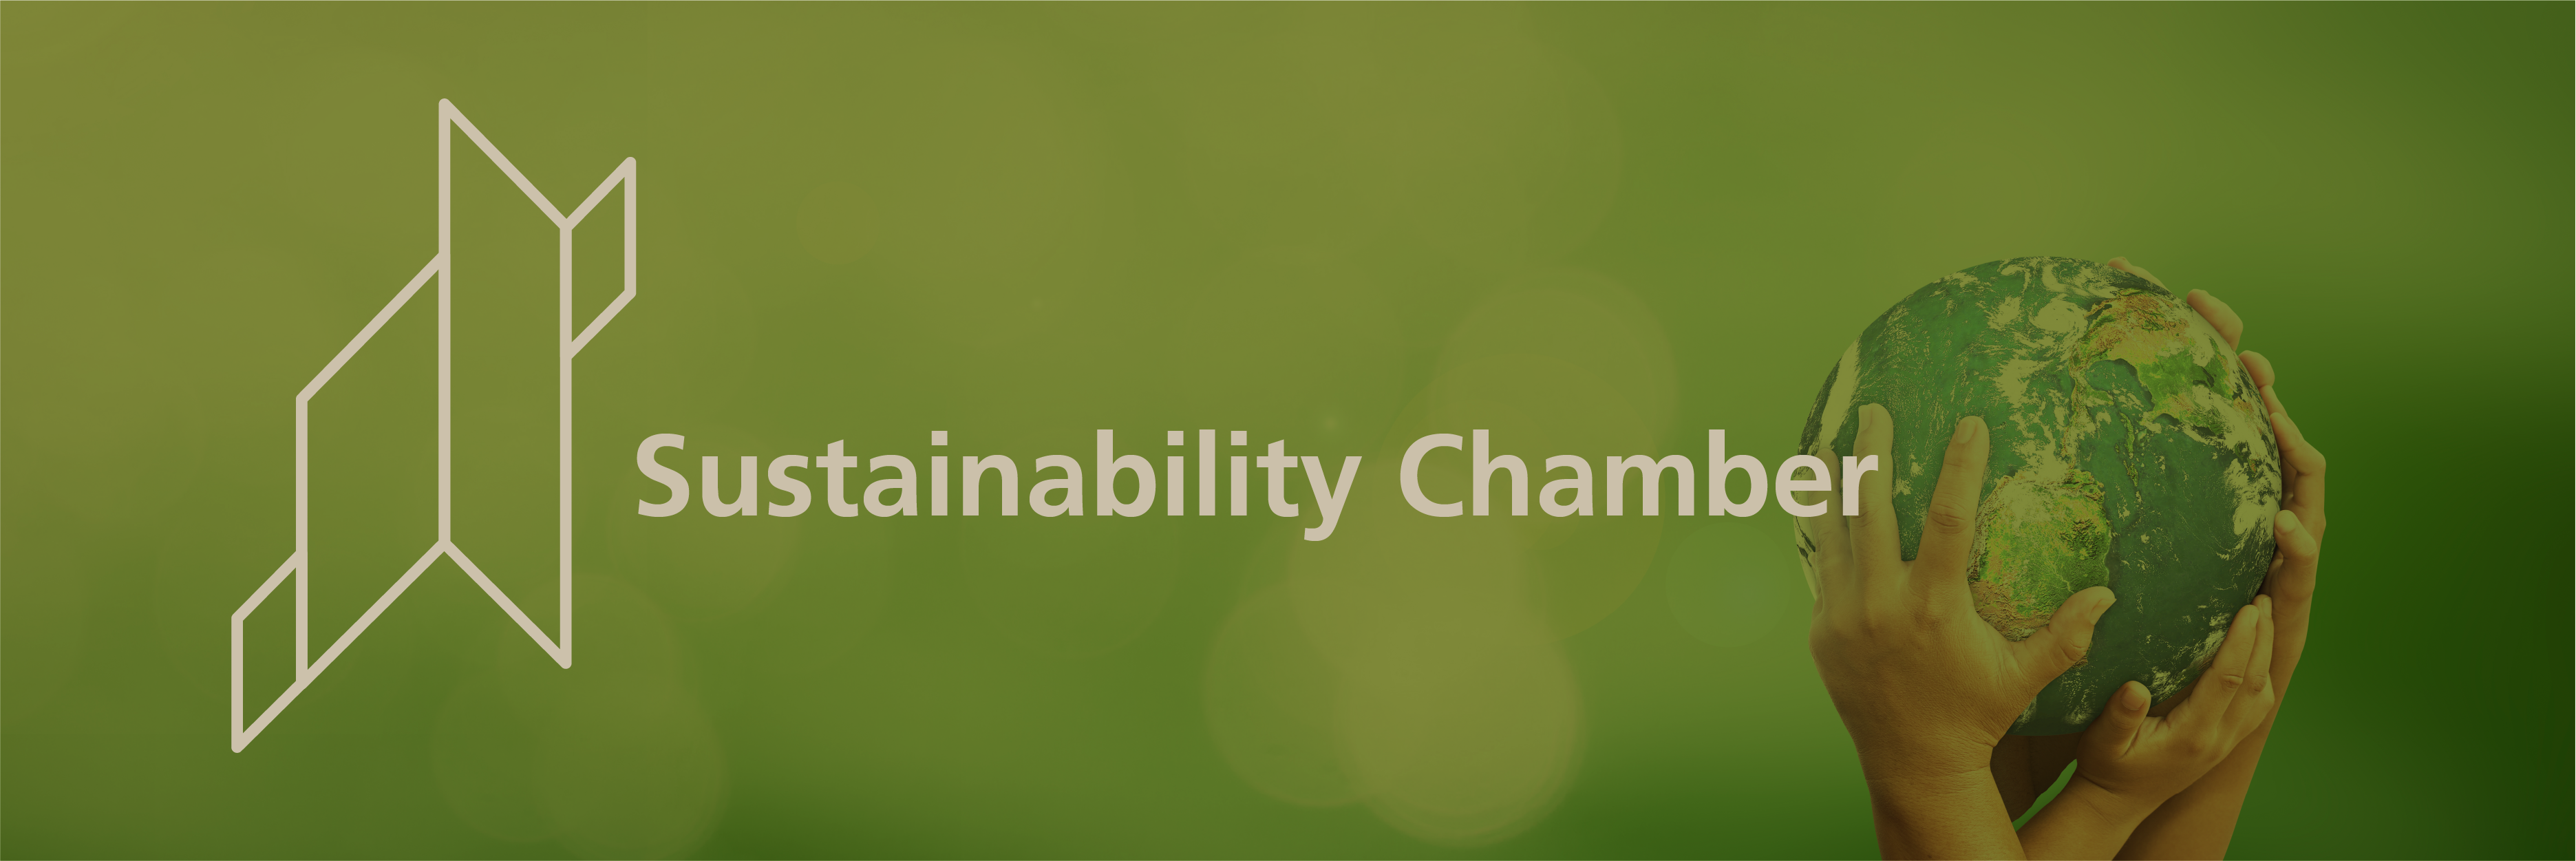 Sustainability Chamber